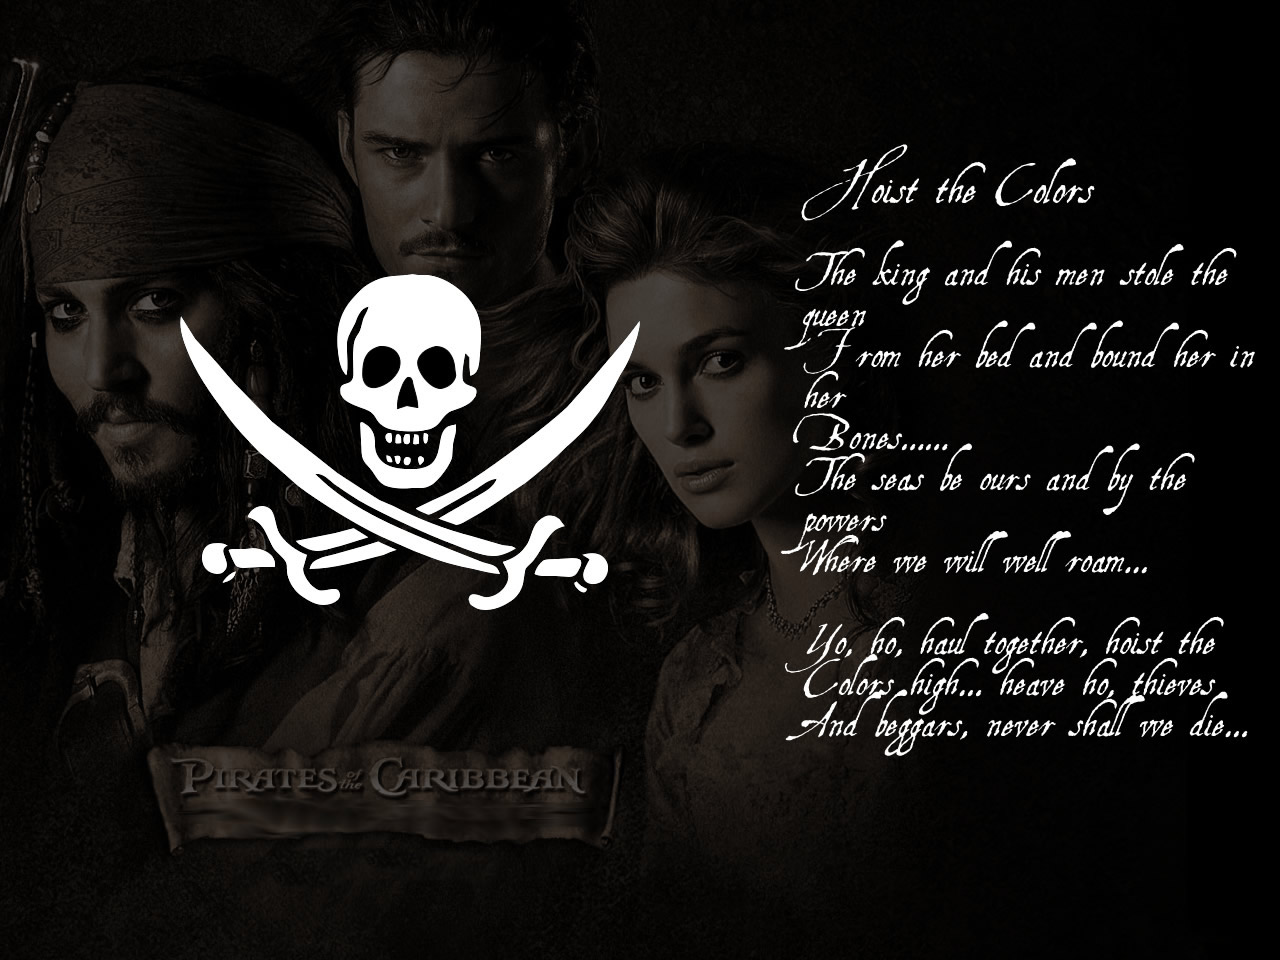 Voices песня перевод. Hoist the Colours Pirates of the Caribbean Cover. Hoist the Colours игра. Never shall we die. Hoist the Colours на русском текст.